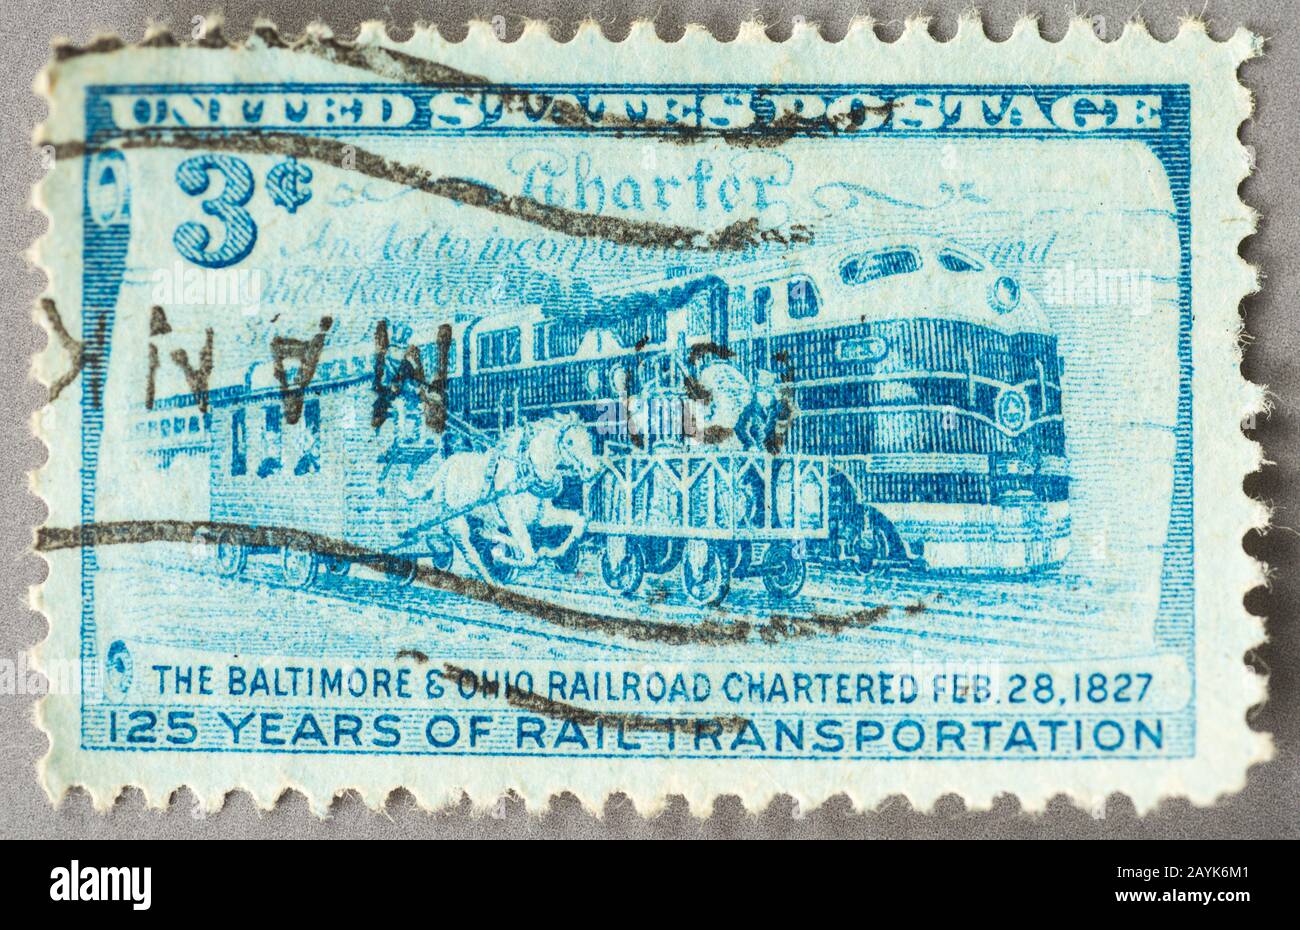 Eine US-Briefmarkenaufnahme von 1952, die 125 Jahre auf den Bahnstrecken in Baltimore und Ohio aufzeichnet. Das Bild zeigt gezeichnete und moderne Schienenfahrzeuge. Stockfoto